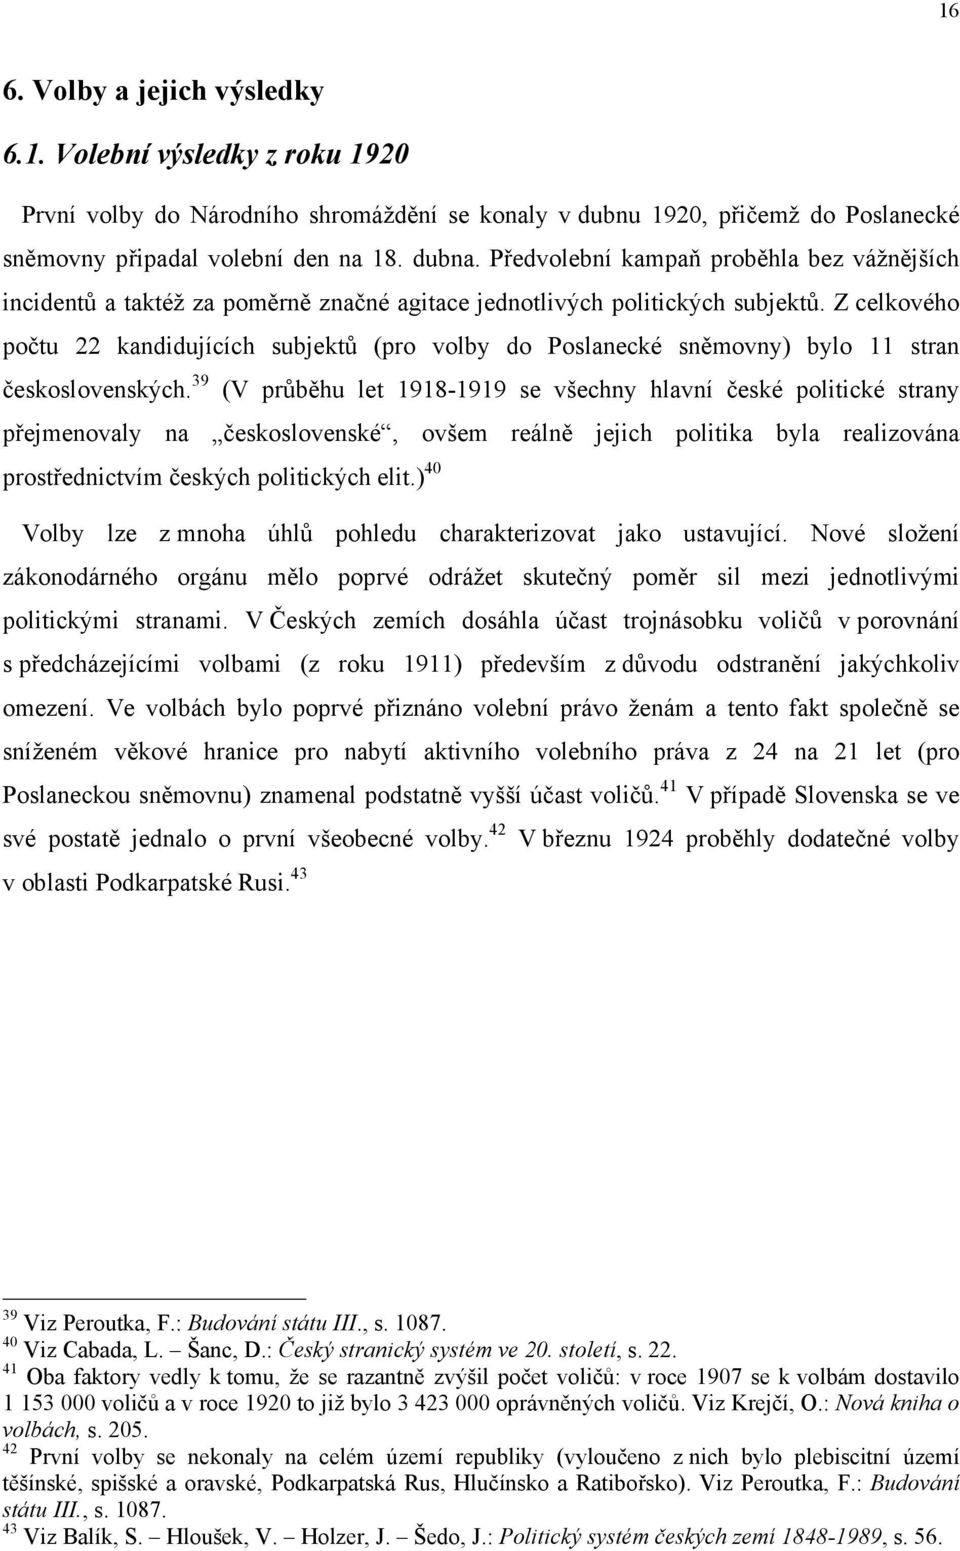 Z celkového počtu 22 kandidujících subjektů (pro volby do Poslanecké sněmovny) bylo 11 stran československých.